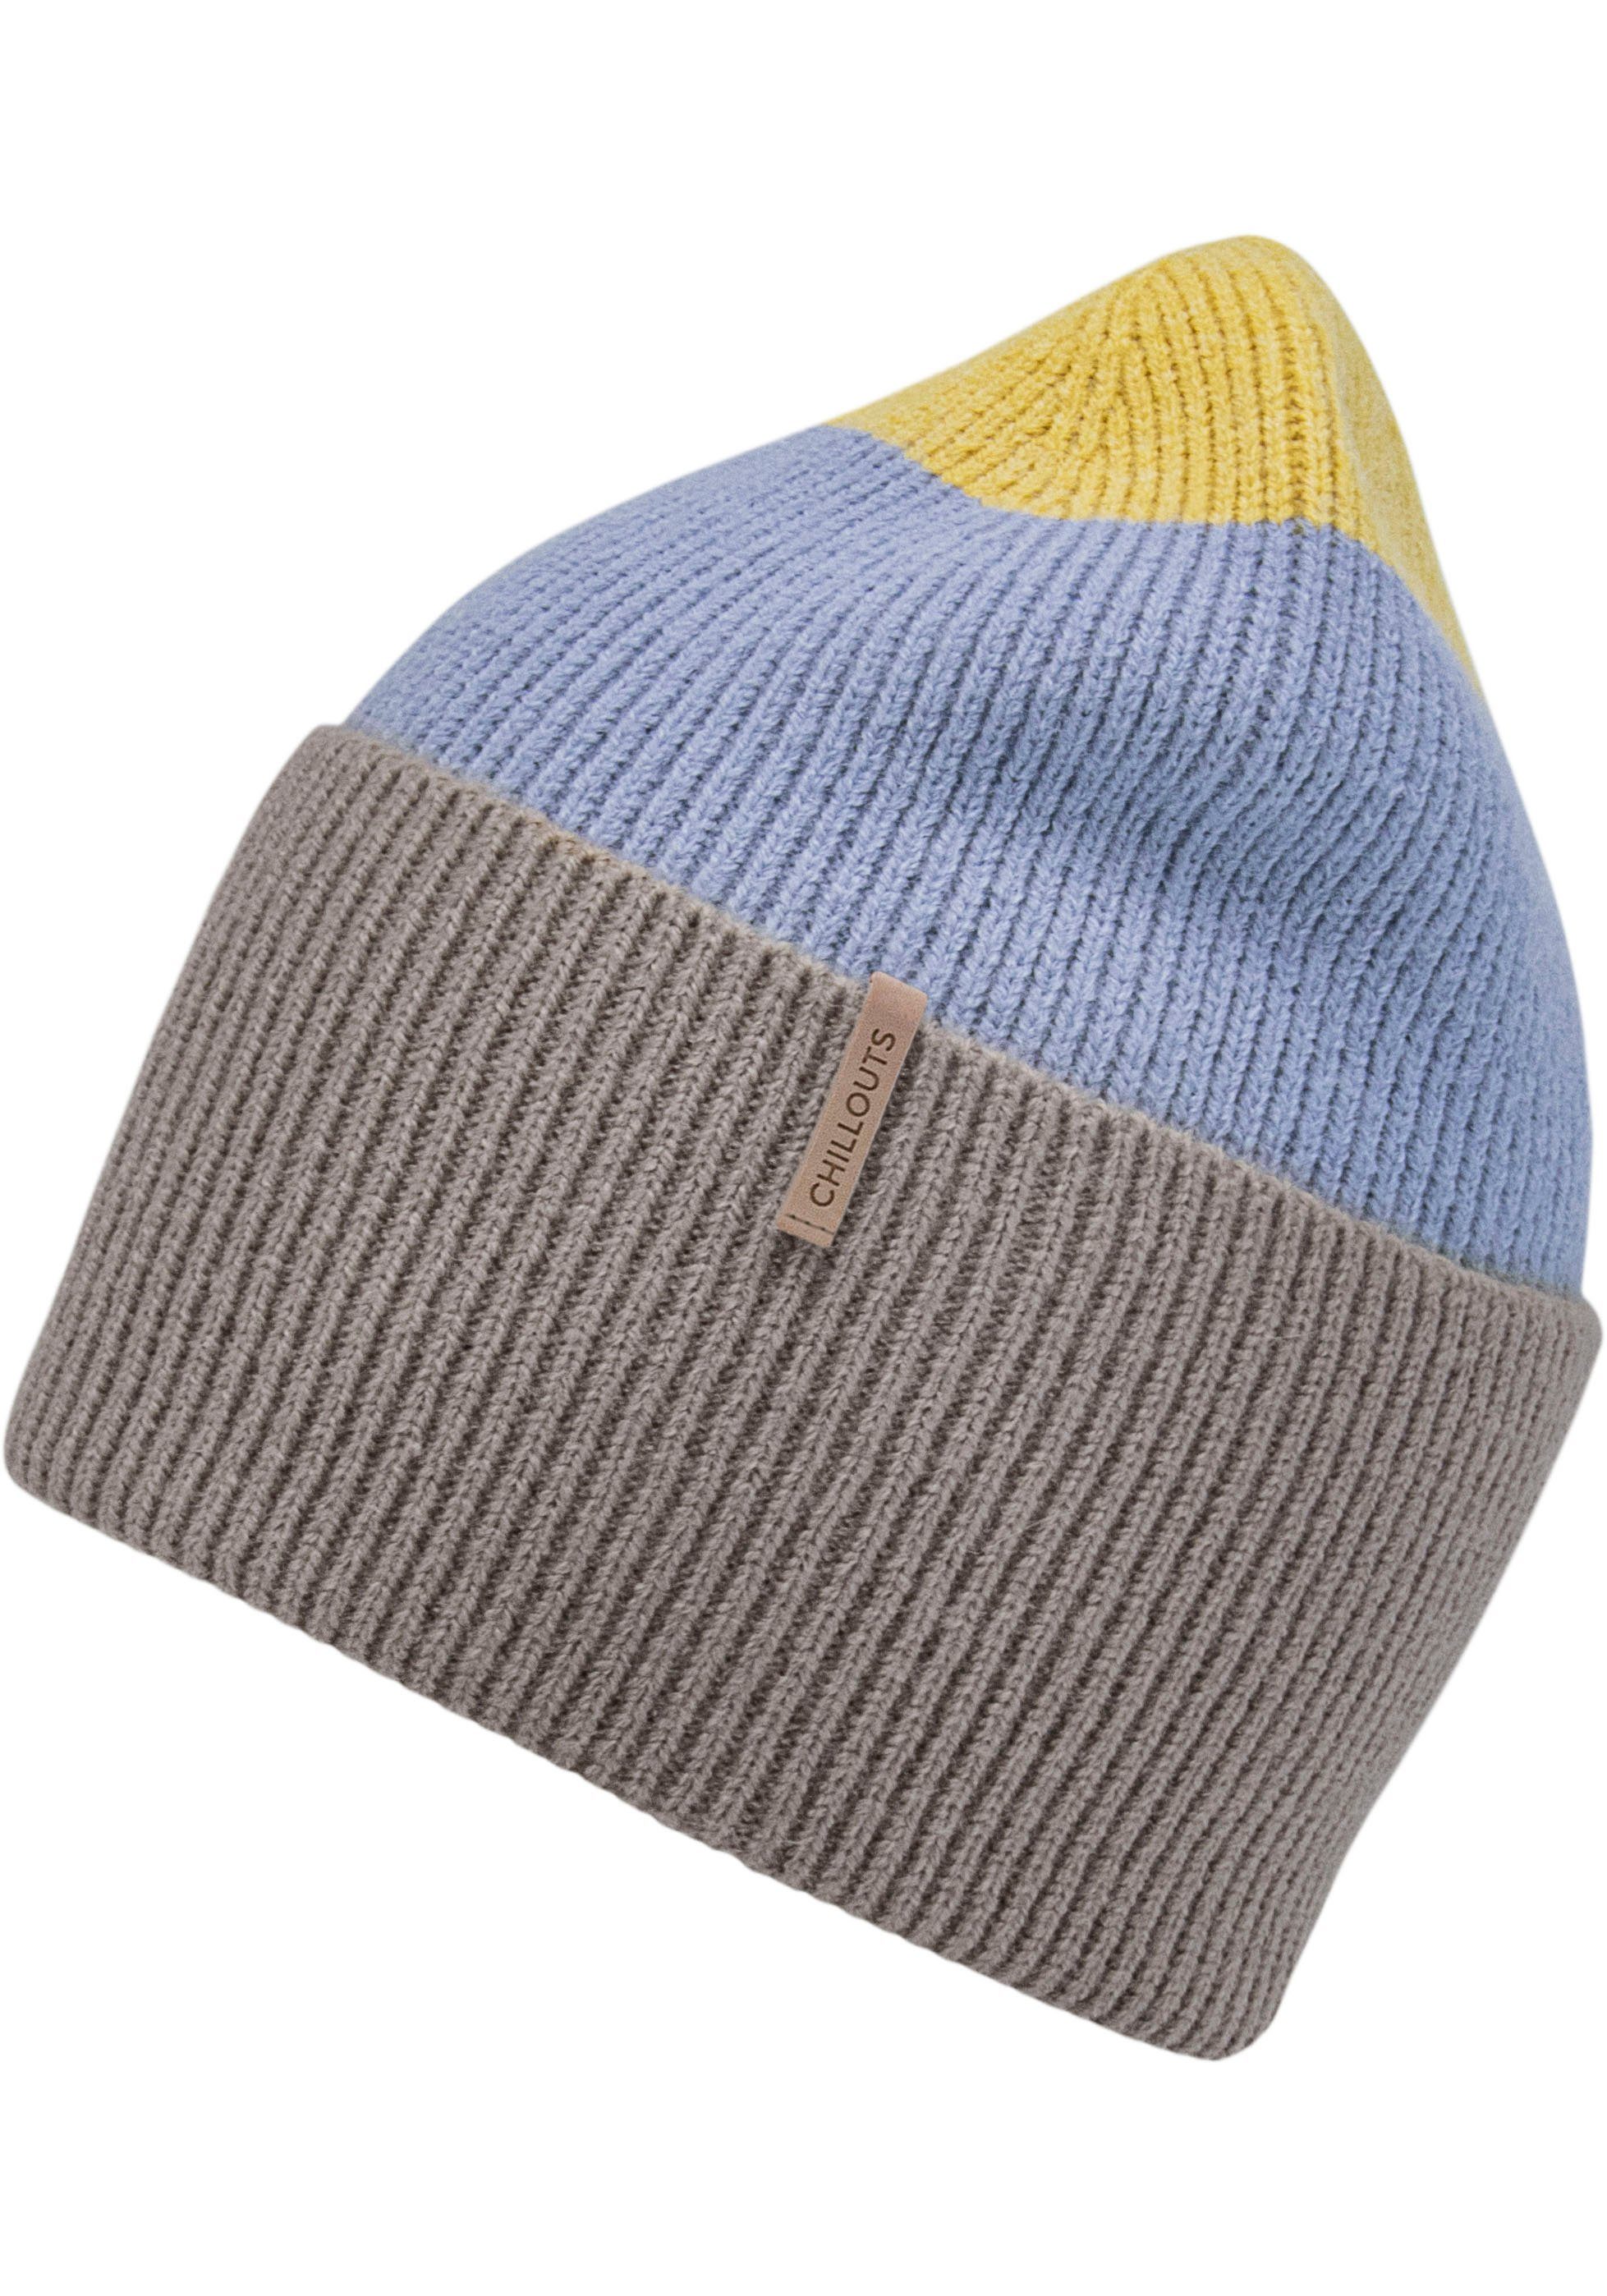 Tamy Hat Rippenstrick, chillouts Blockstreifen blue taupe Strickmütze